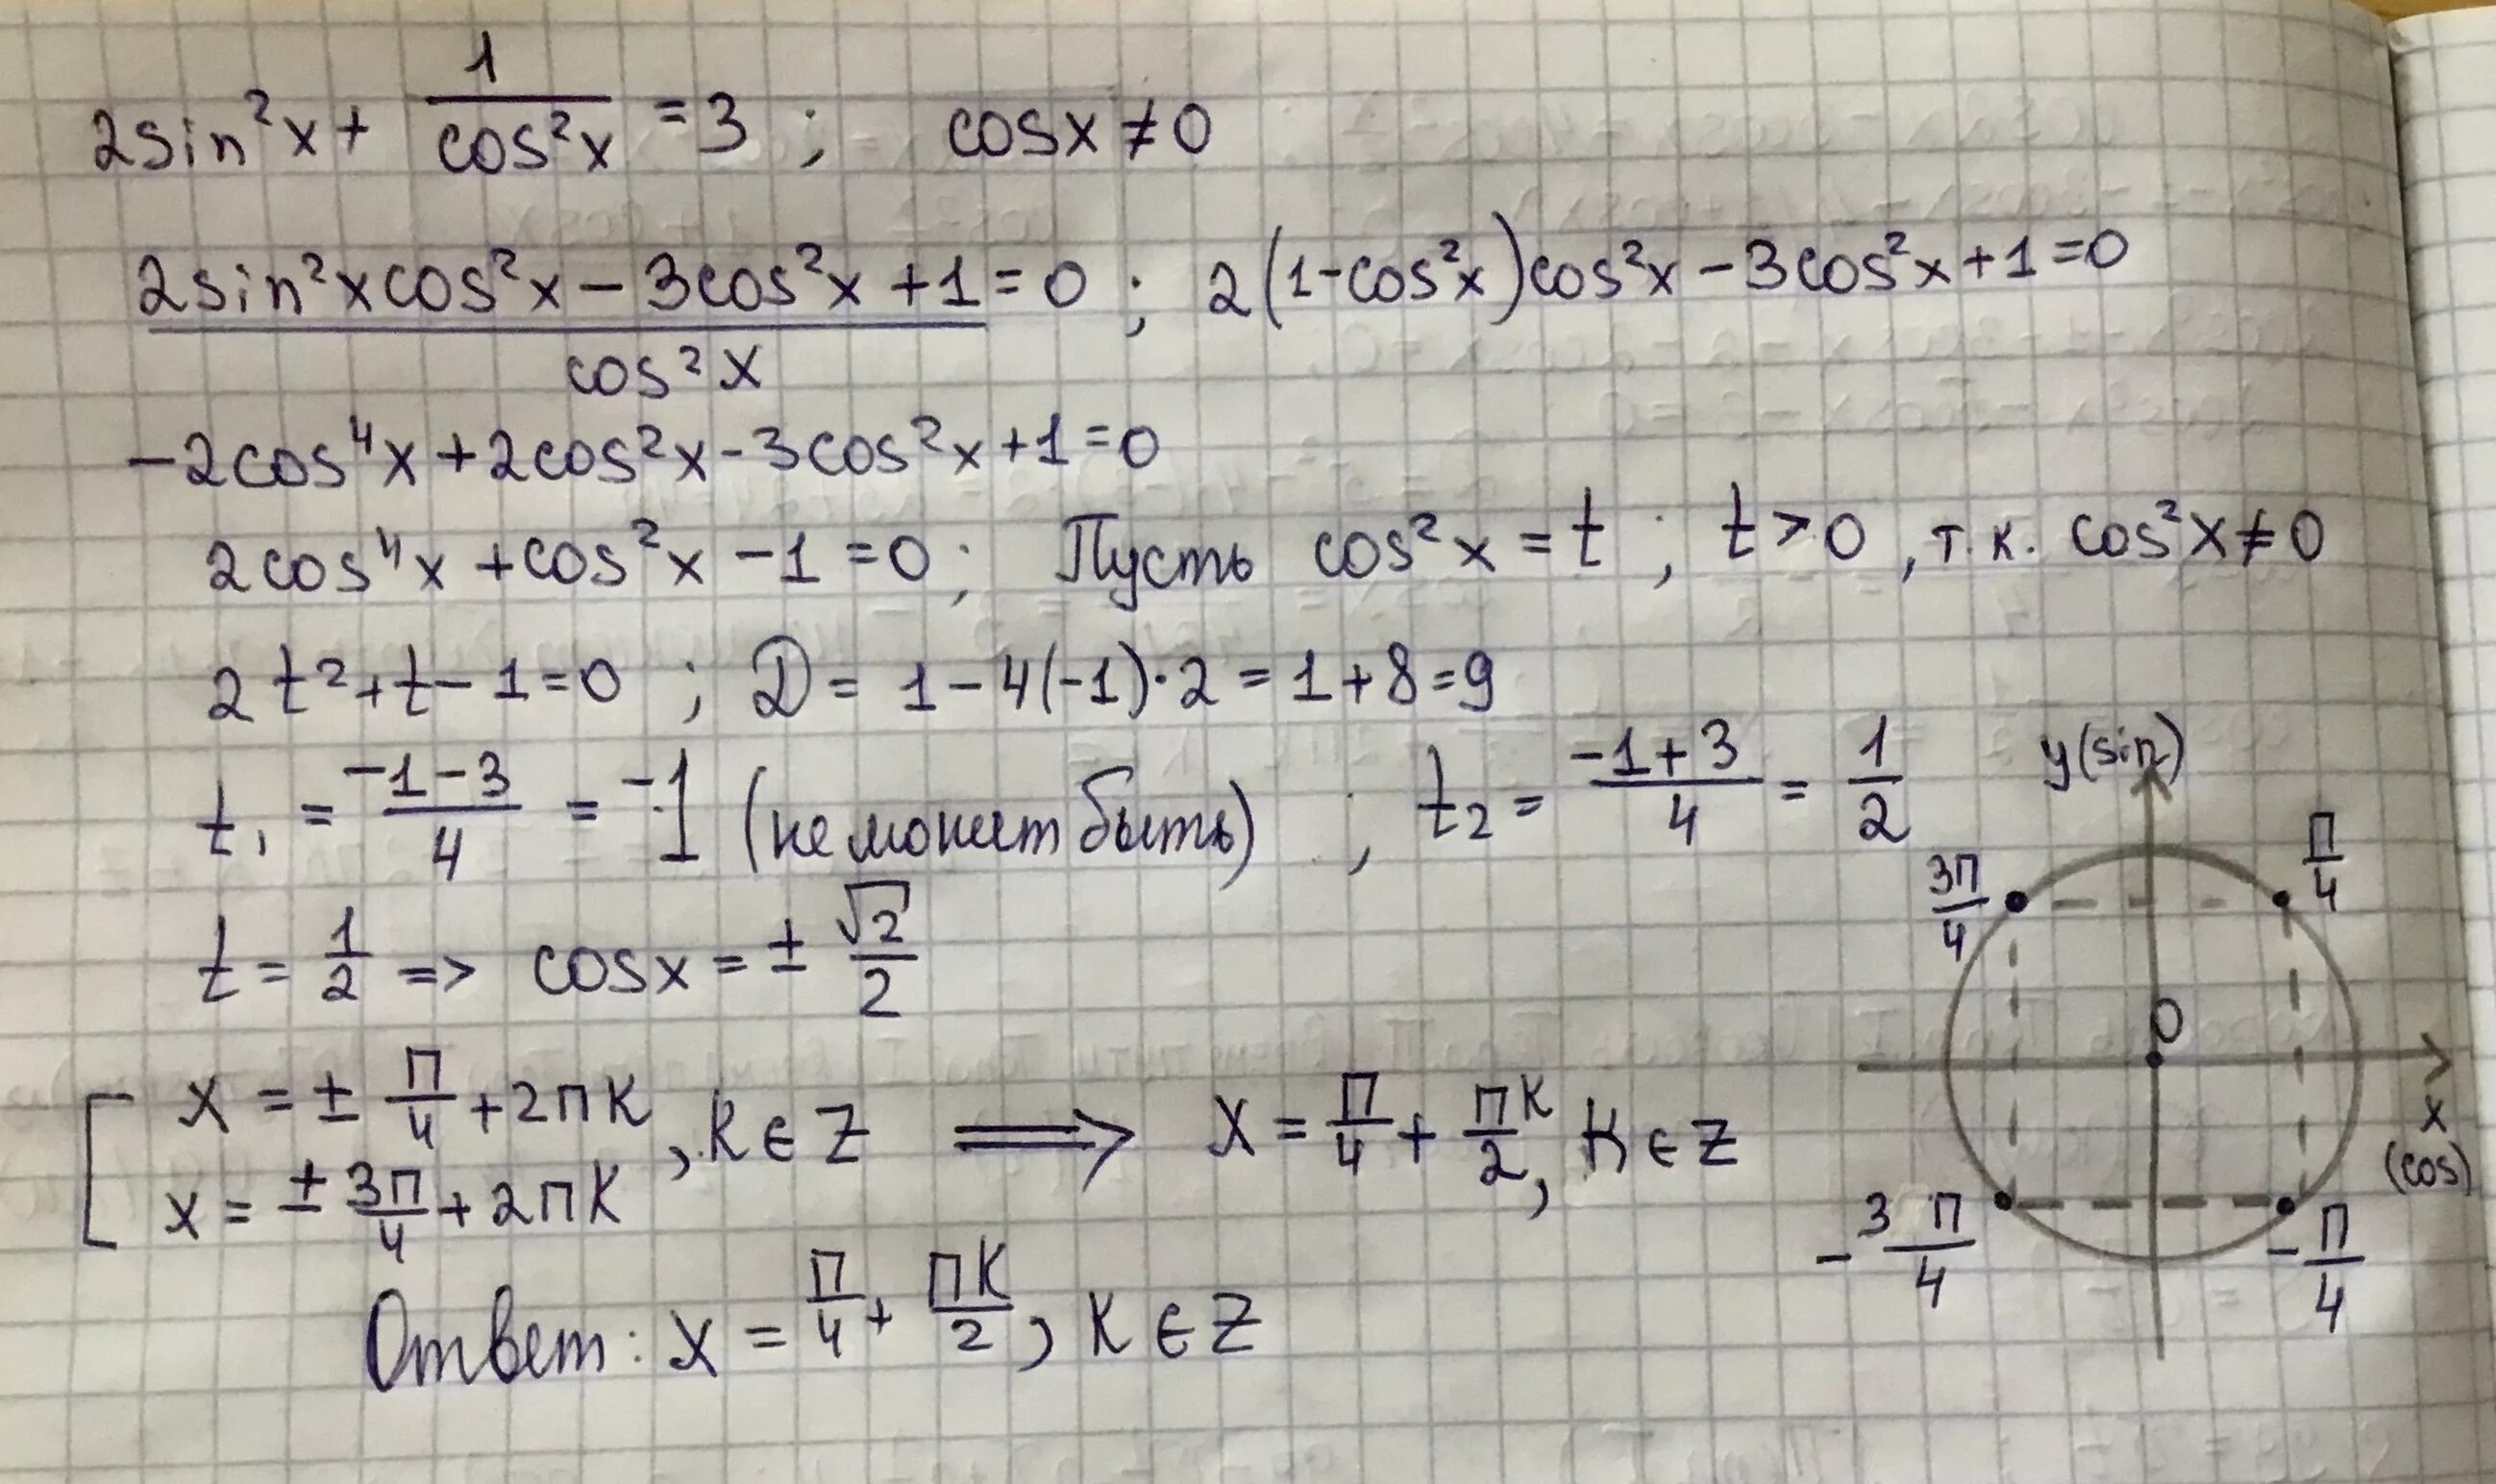 Sin пи x cos пи/2 x -1. Cos 2 Pi 4 x cos 2 Pi 4 x. Cos(Pi/4-х)^2=cos(x+Pi/4)^2. Cos пи(x-2)/3=1/2. X pi 3 0